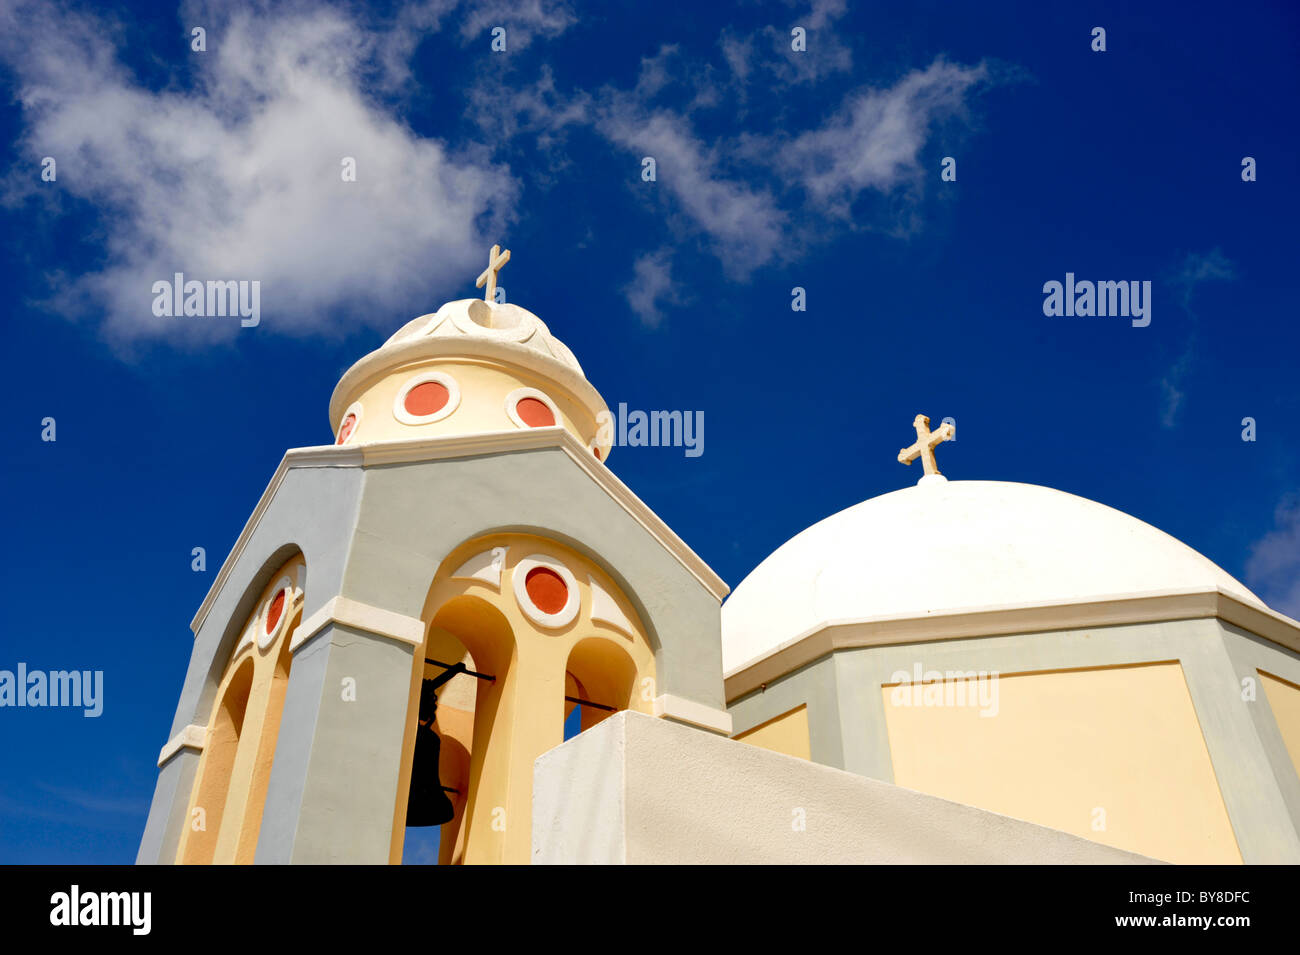 Il tetto a cupola e il campanile di una chiesa a Fira sull'isola greca di Santorini nel Mare Egeo Foto Stock